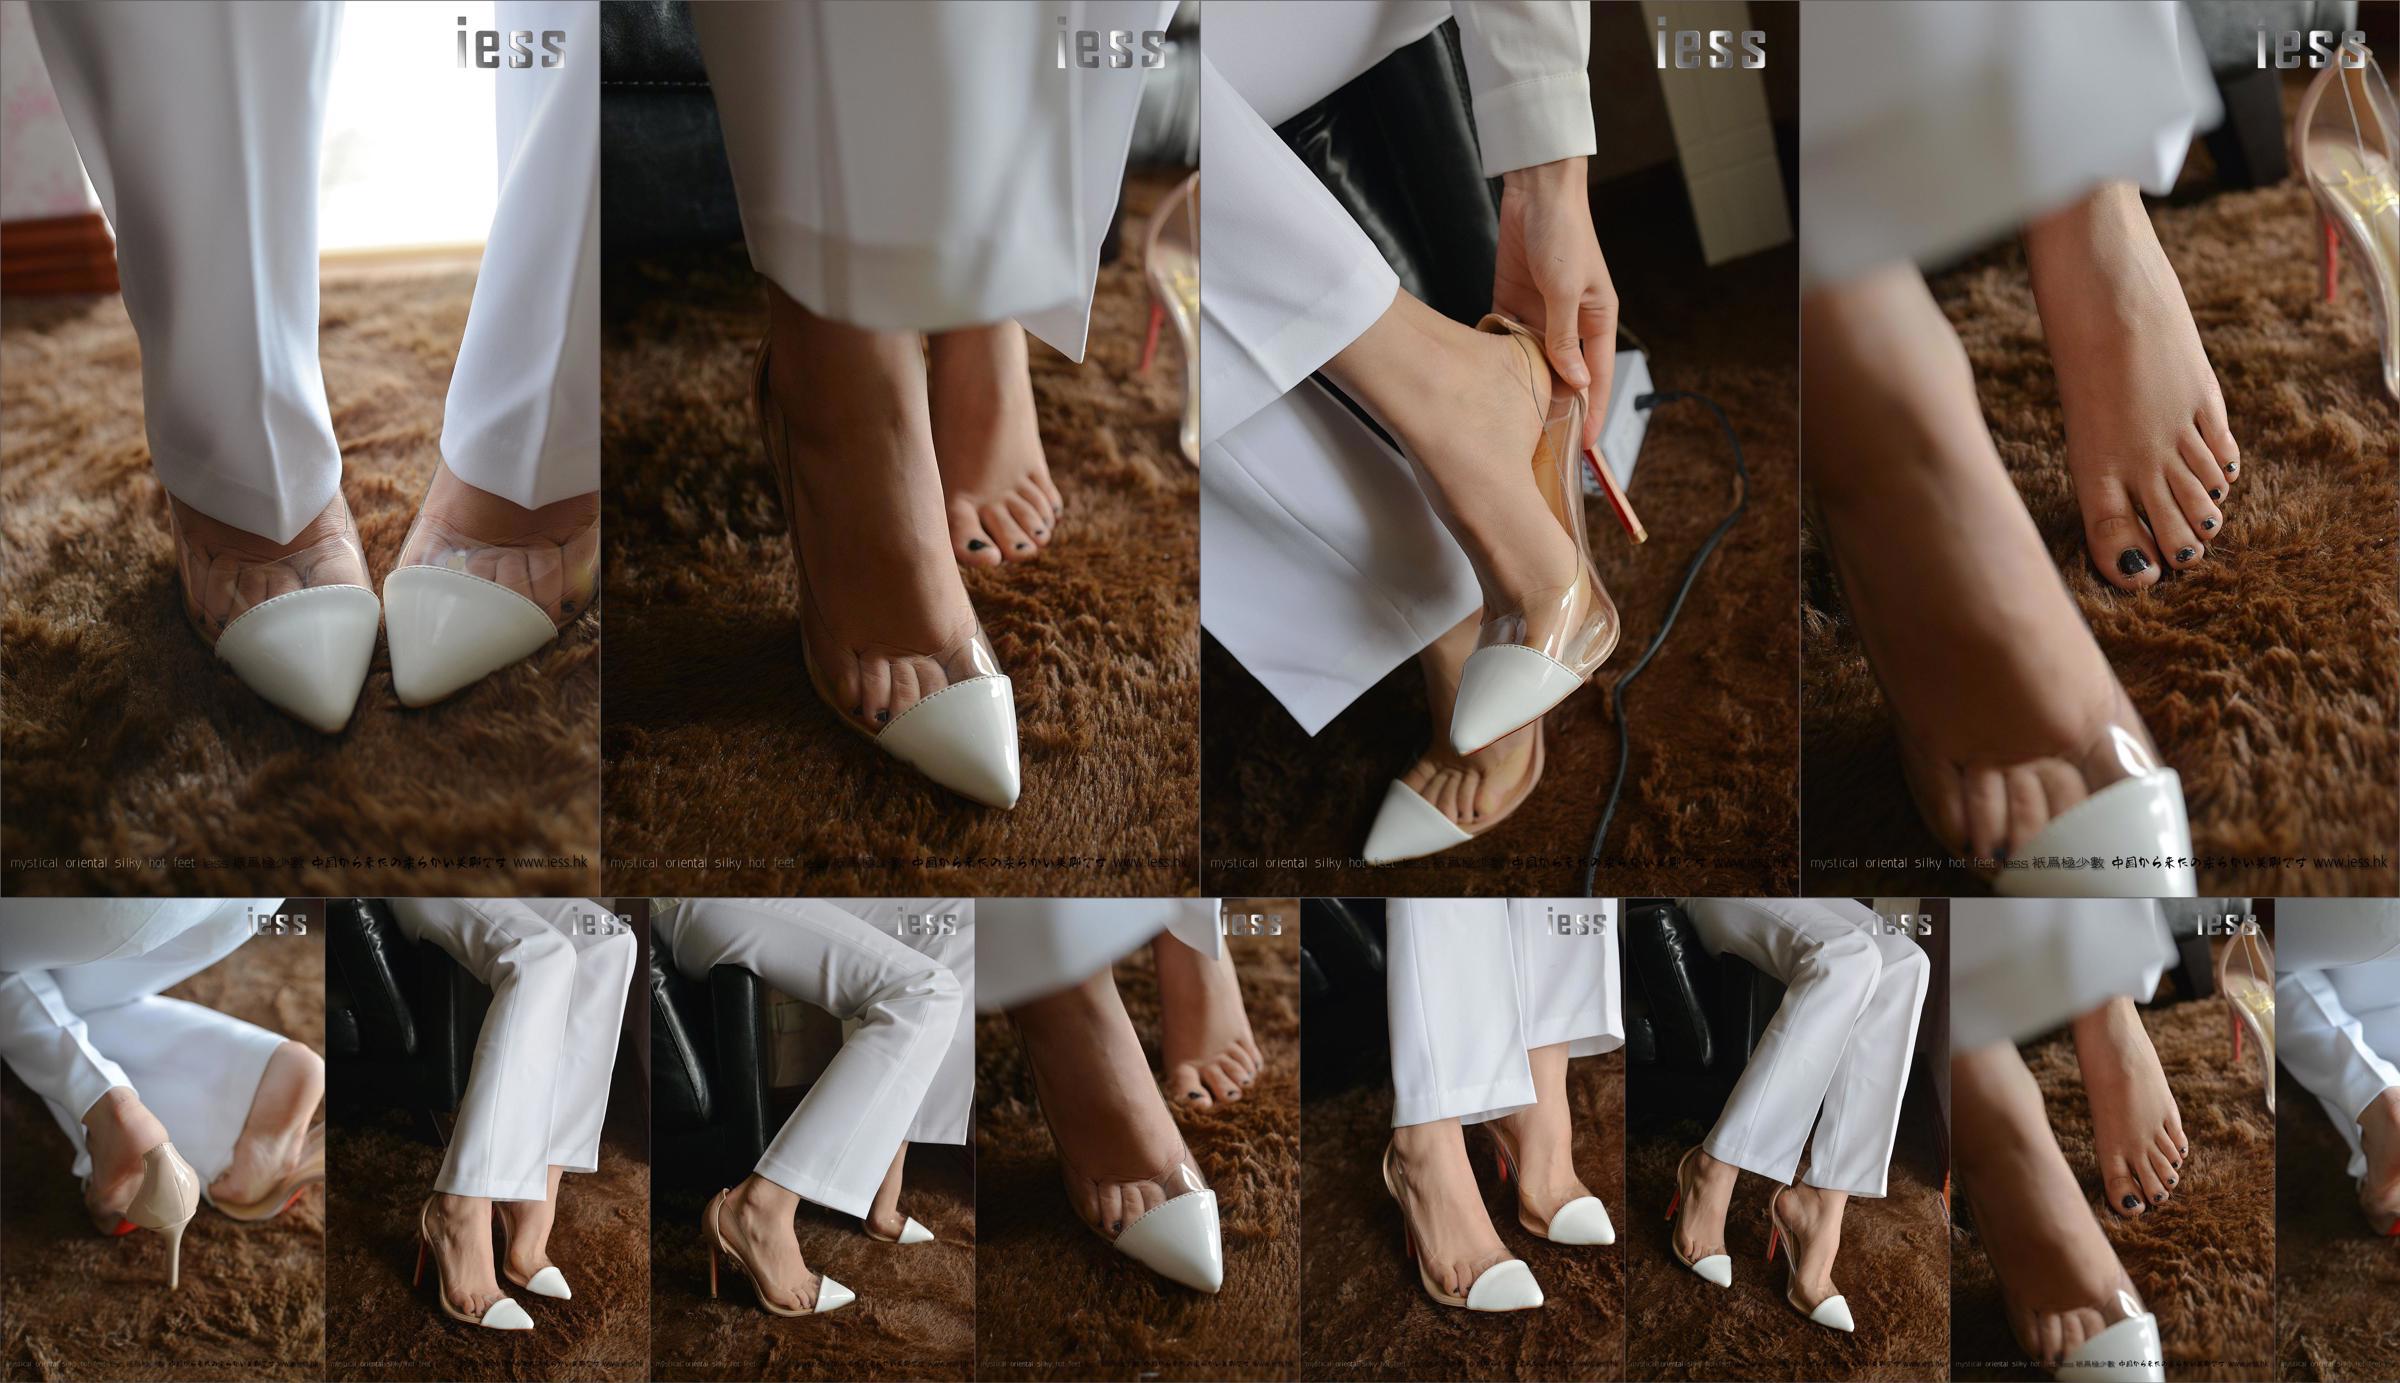 Silky Foot Bento 058 Suspense „Collection - Bare Foot High Heels” [IESS Wei Si Fun Xiang] No.d9869e Strona 6